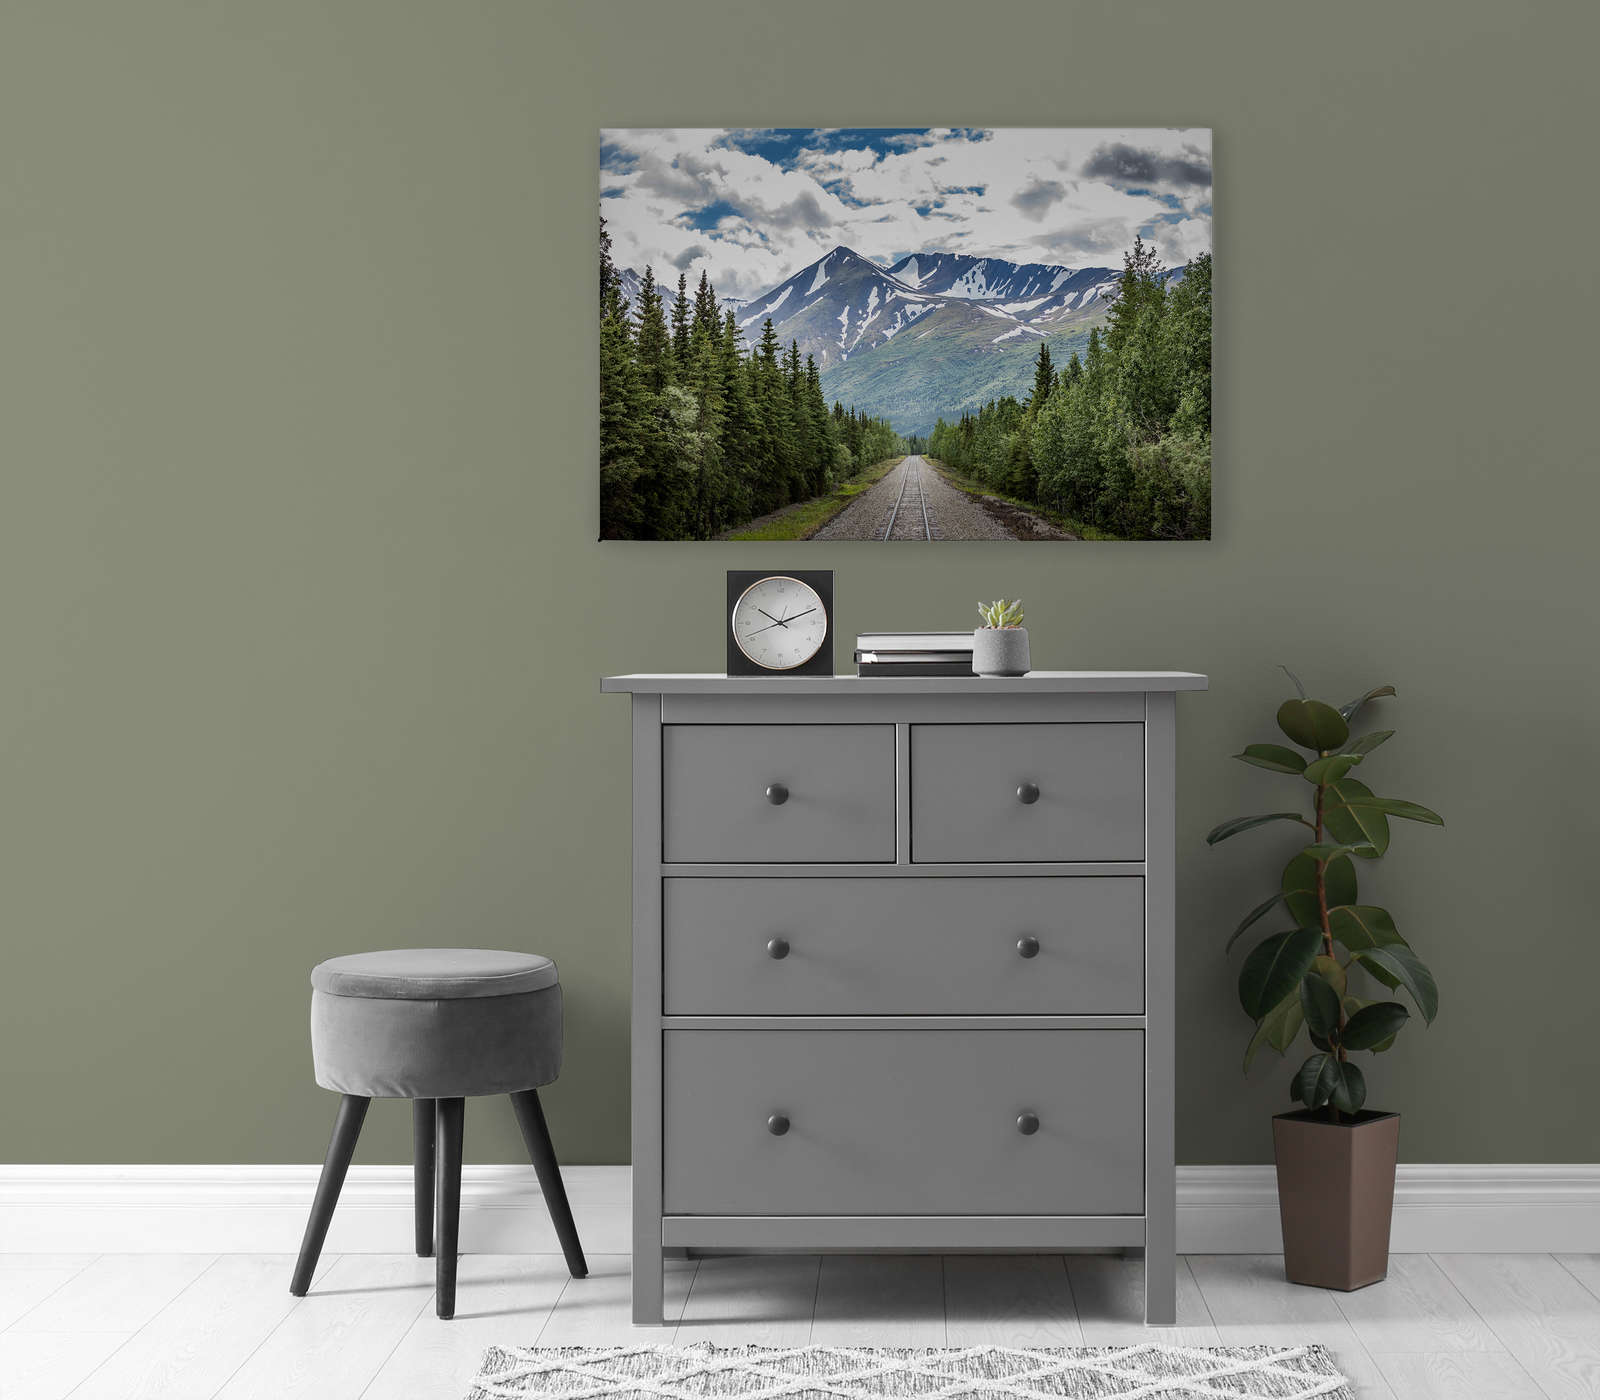             Canvas schilderij met treinrails door een bos bij de bergen - 0.90 m x 0.60 m
        